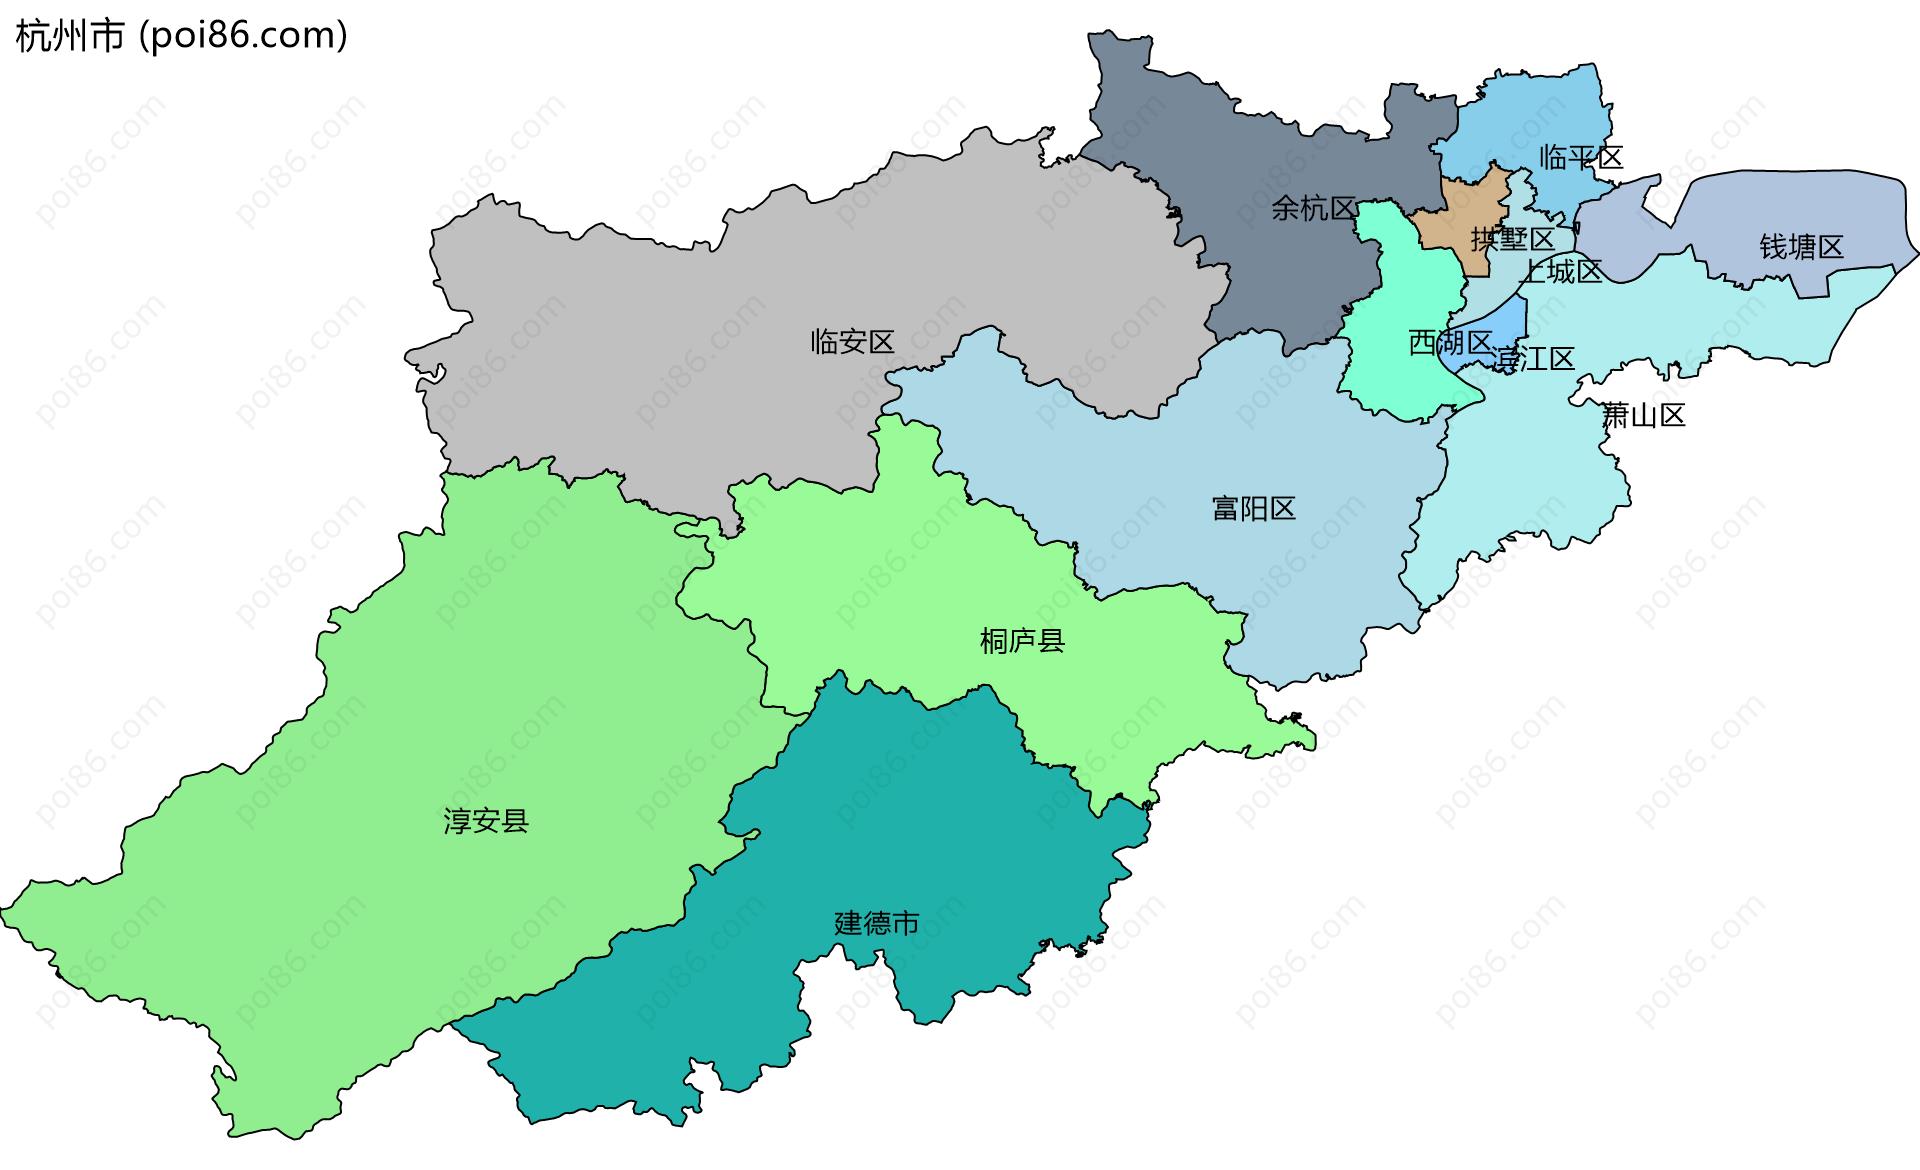 杭州市边界地图